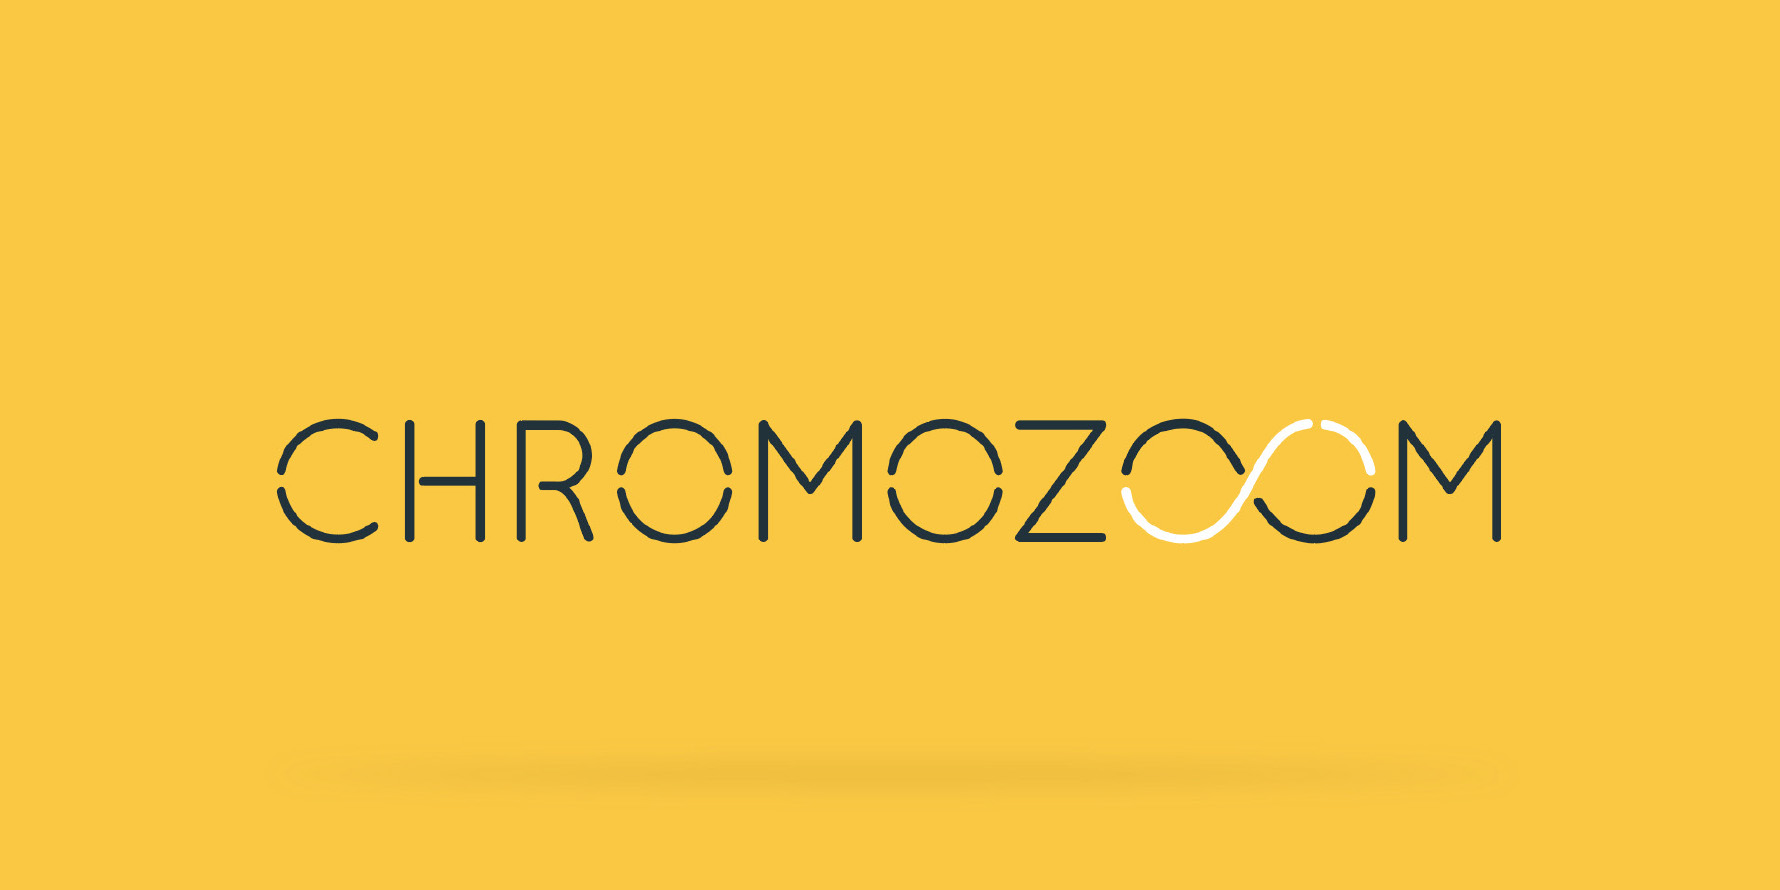 Chromozoom logo on yellow background.